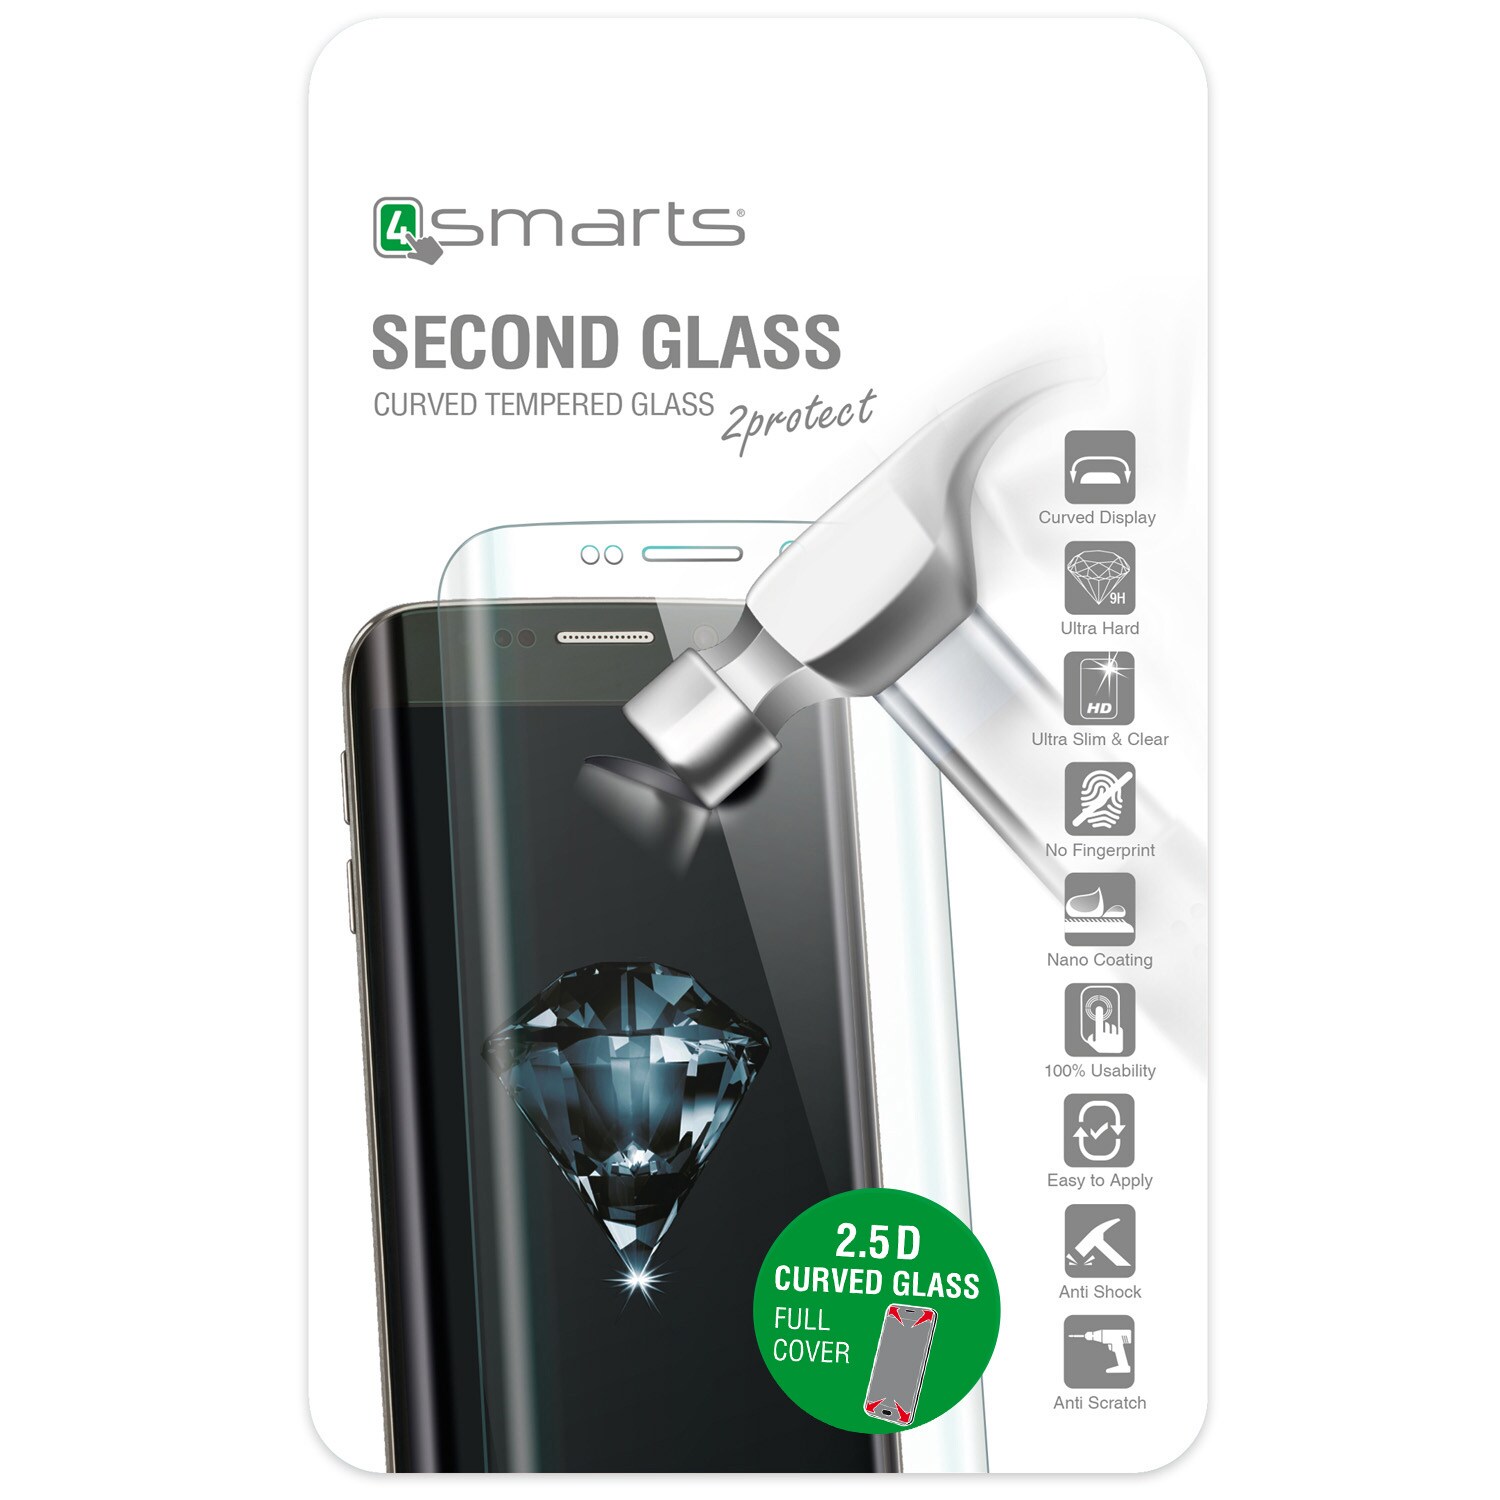 4smarts Second Glass Curved 2.5D til iPhone 6 / 6S - Sort